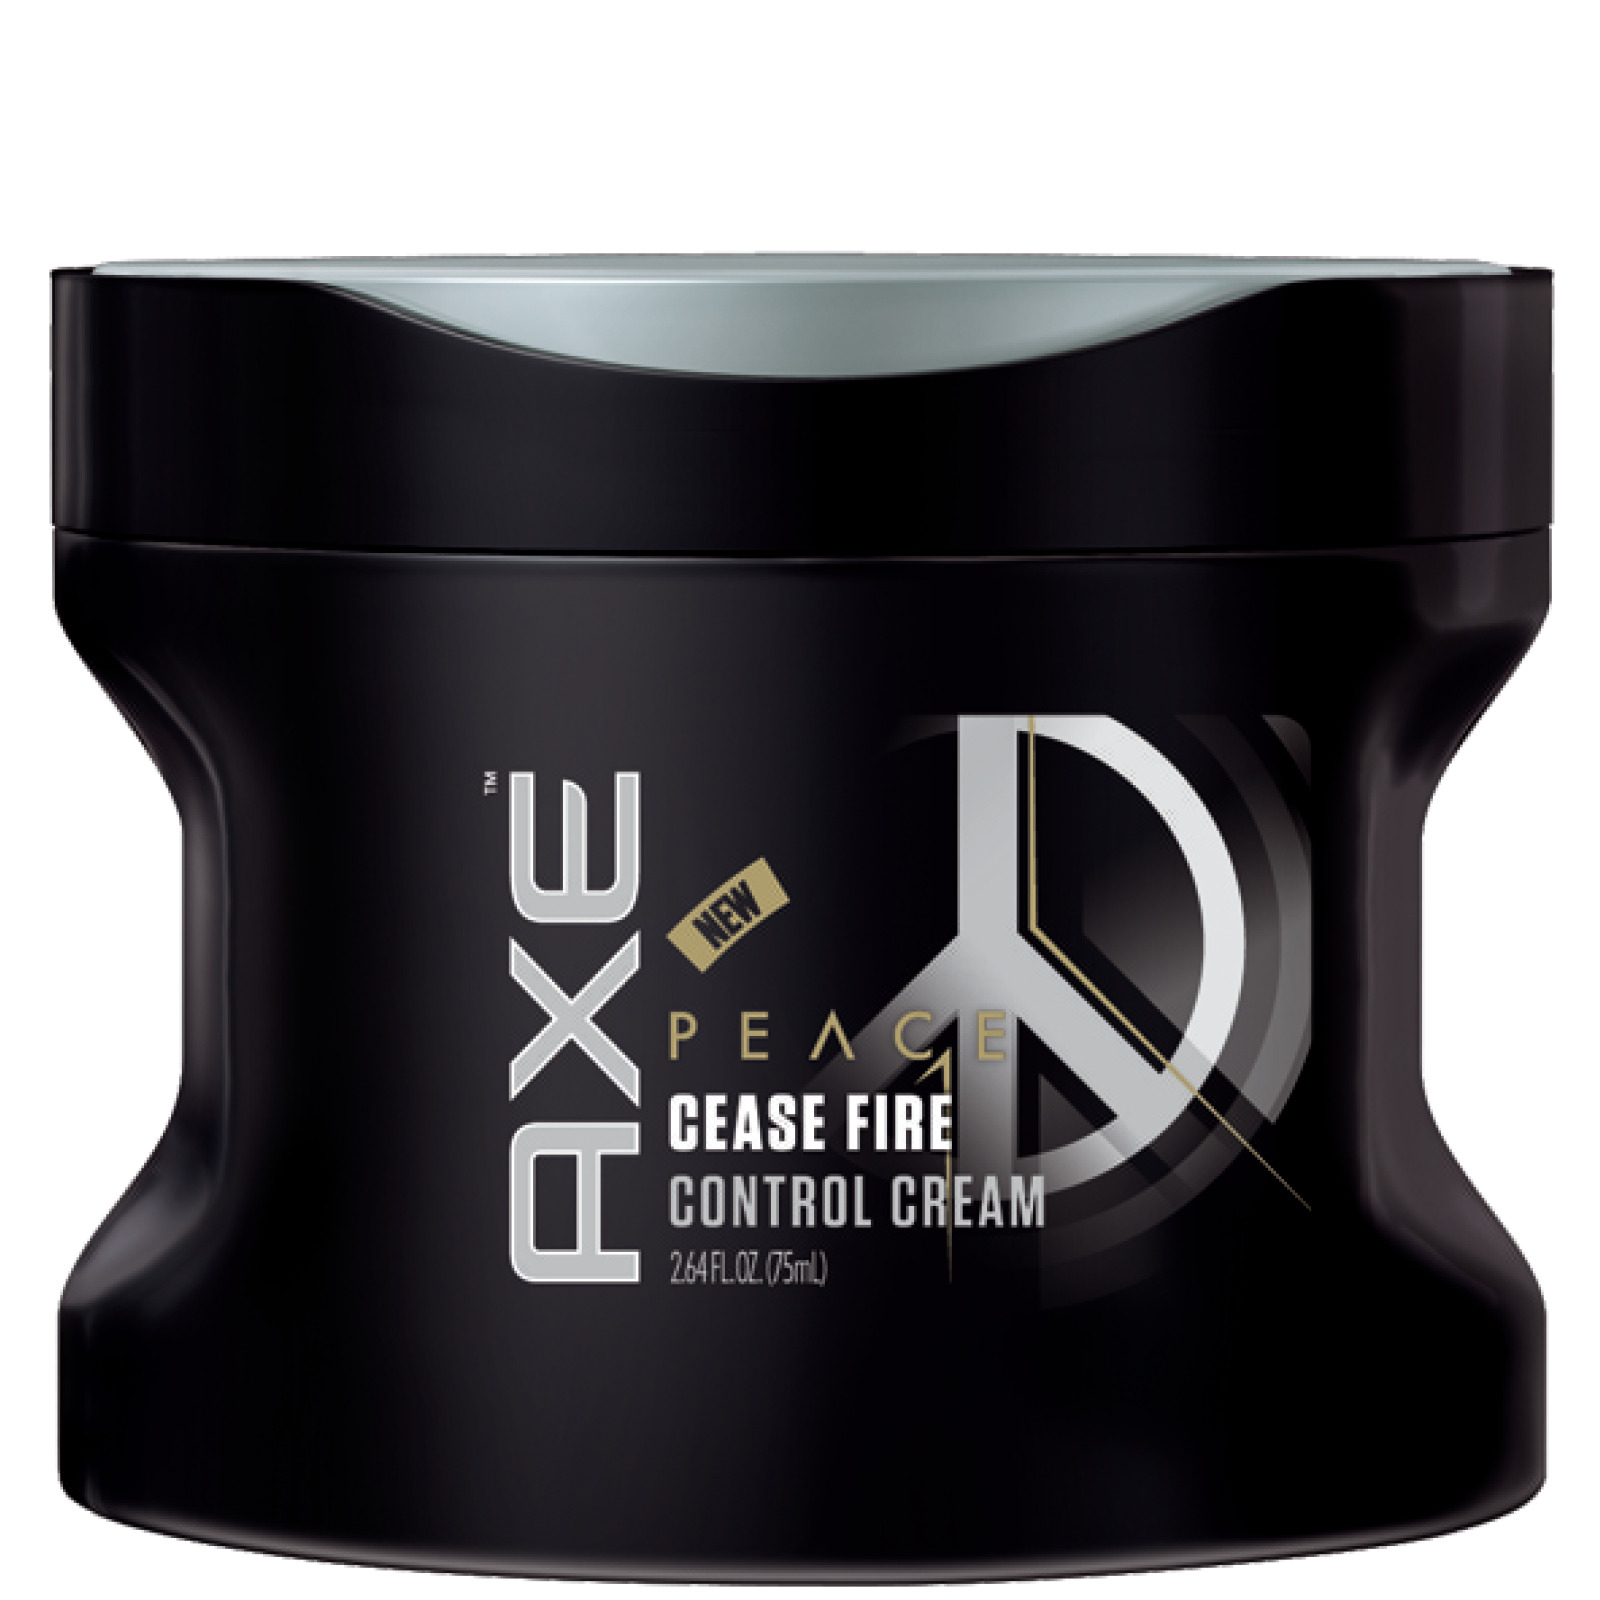 AXE Peace Cease Fire Control Cream, 2.64 fl oz